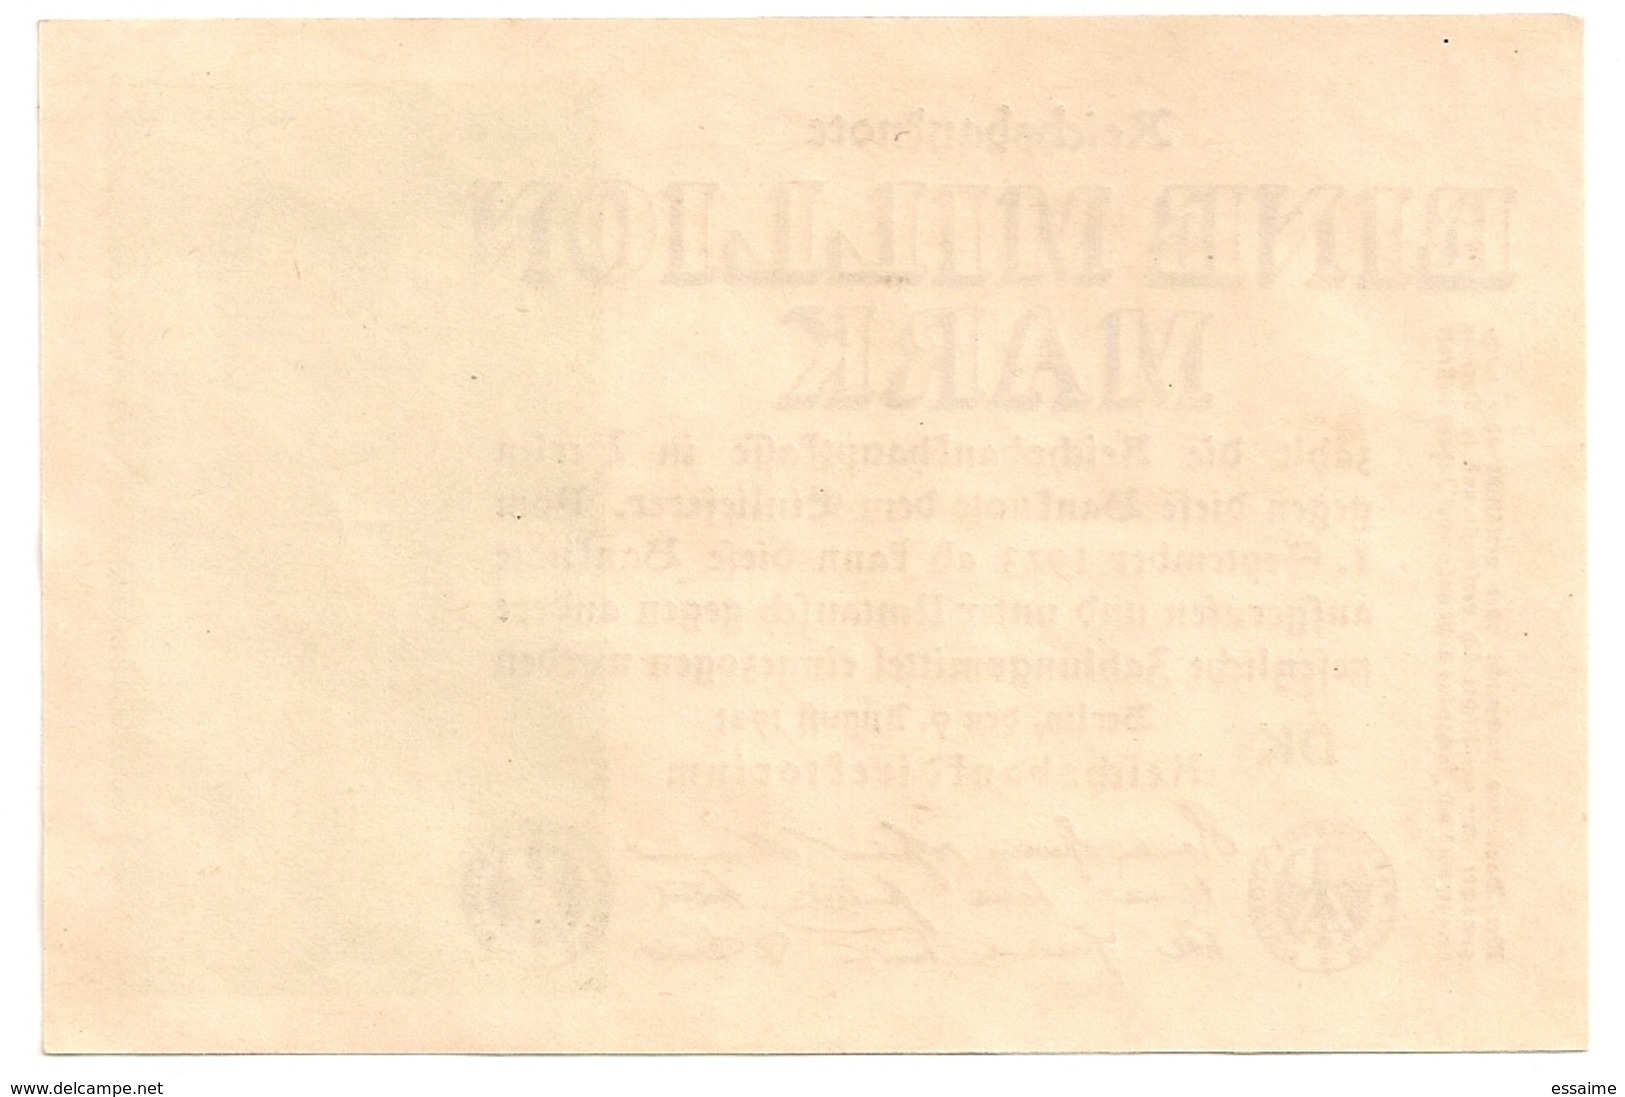 Allemagne. Reichsbanknote 1 Million Mark. Août 1923 Neuf Mint - 1 Million Mark